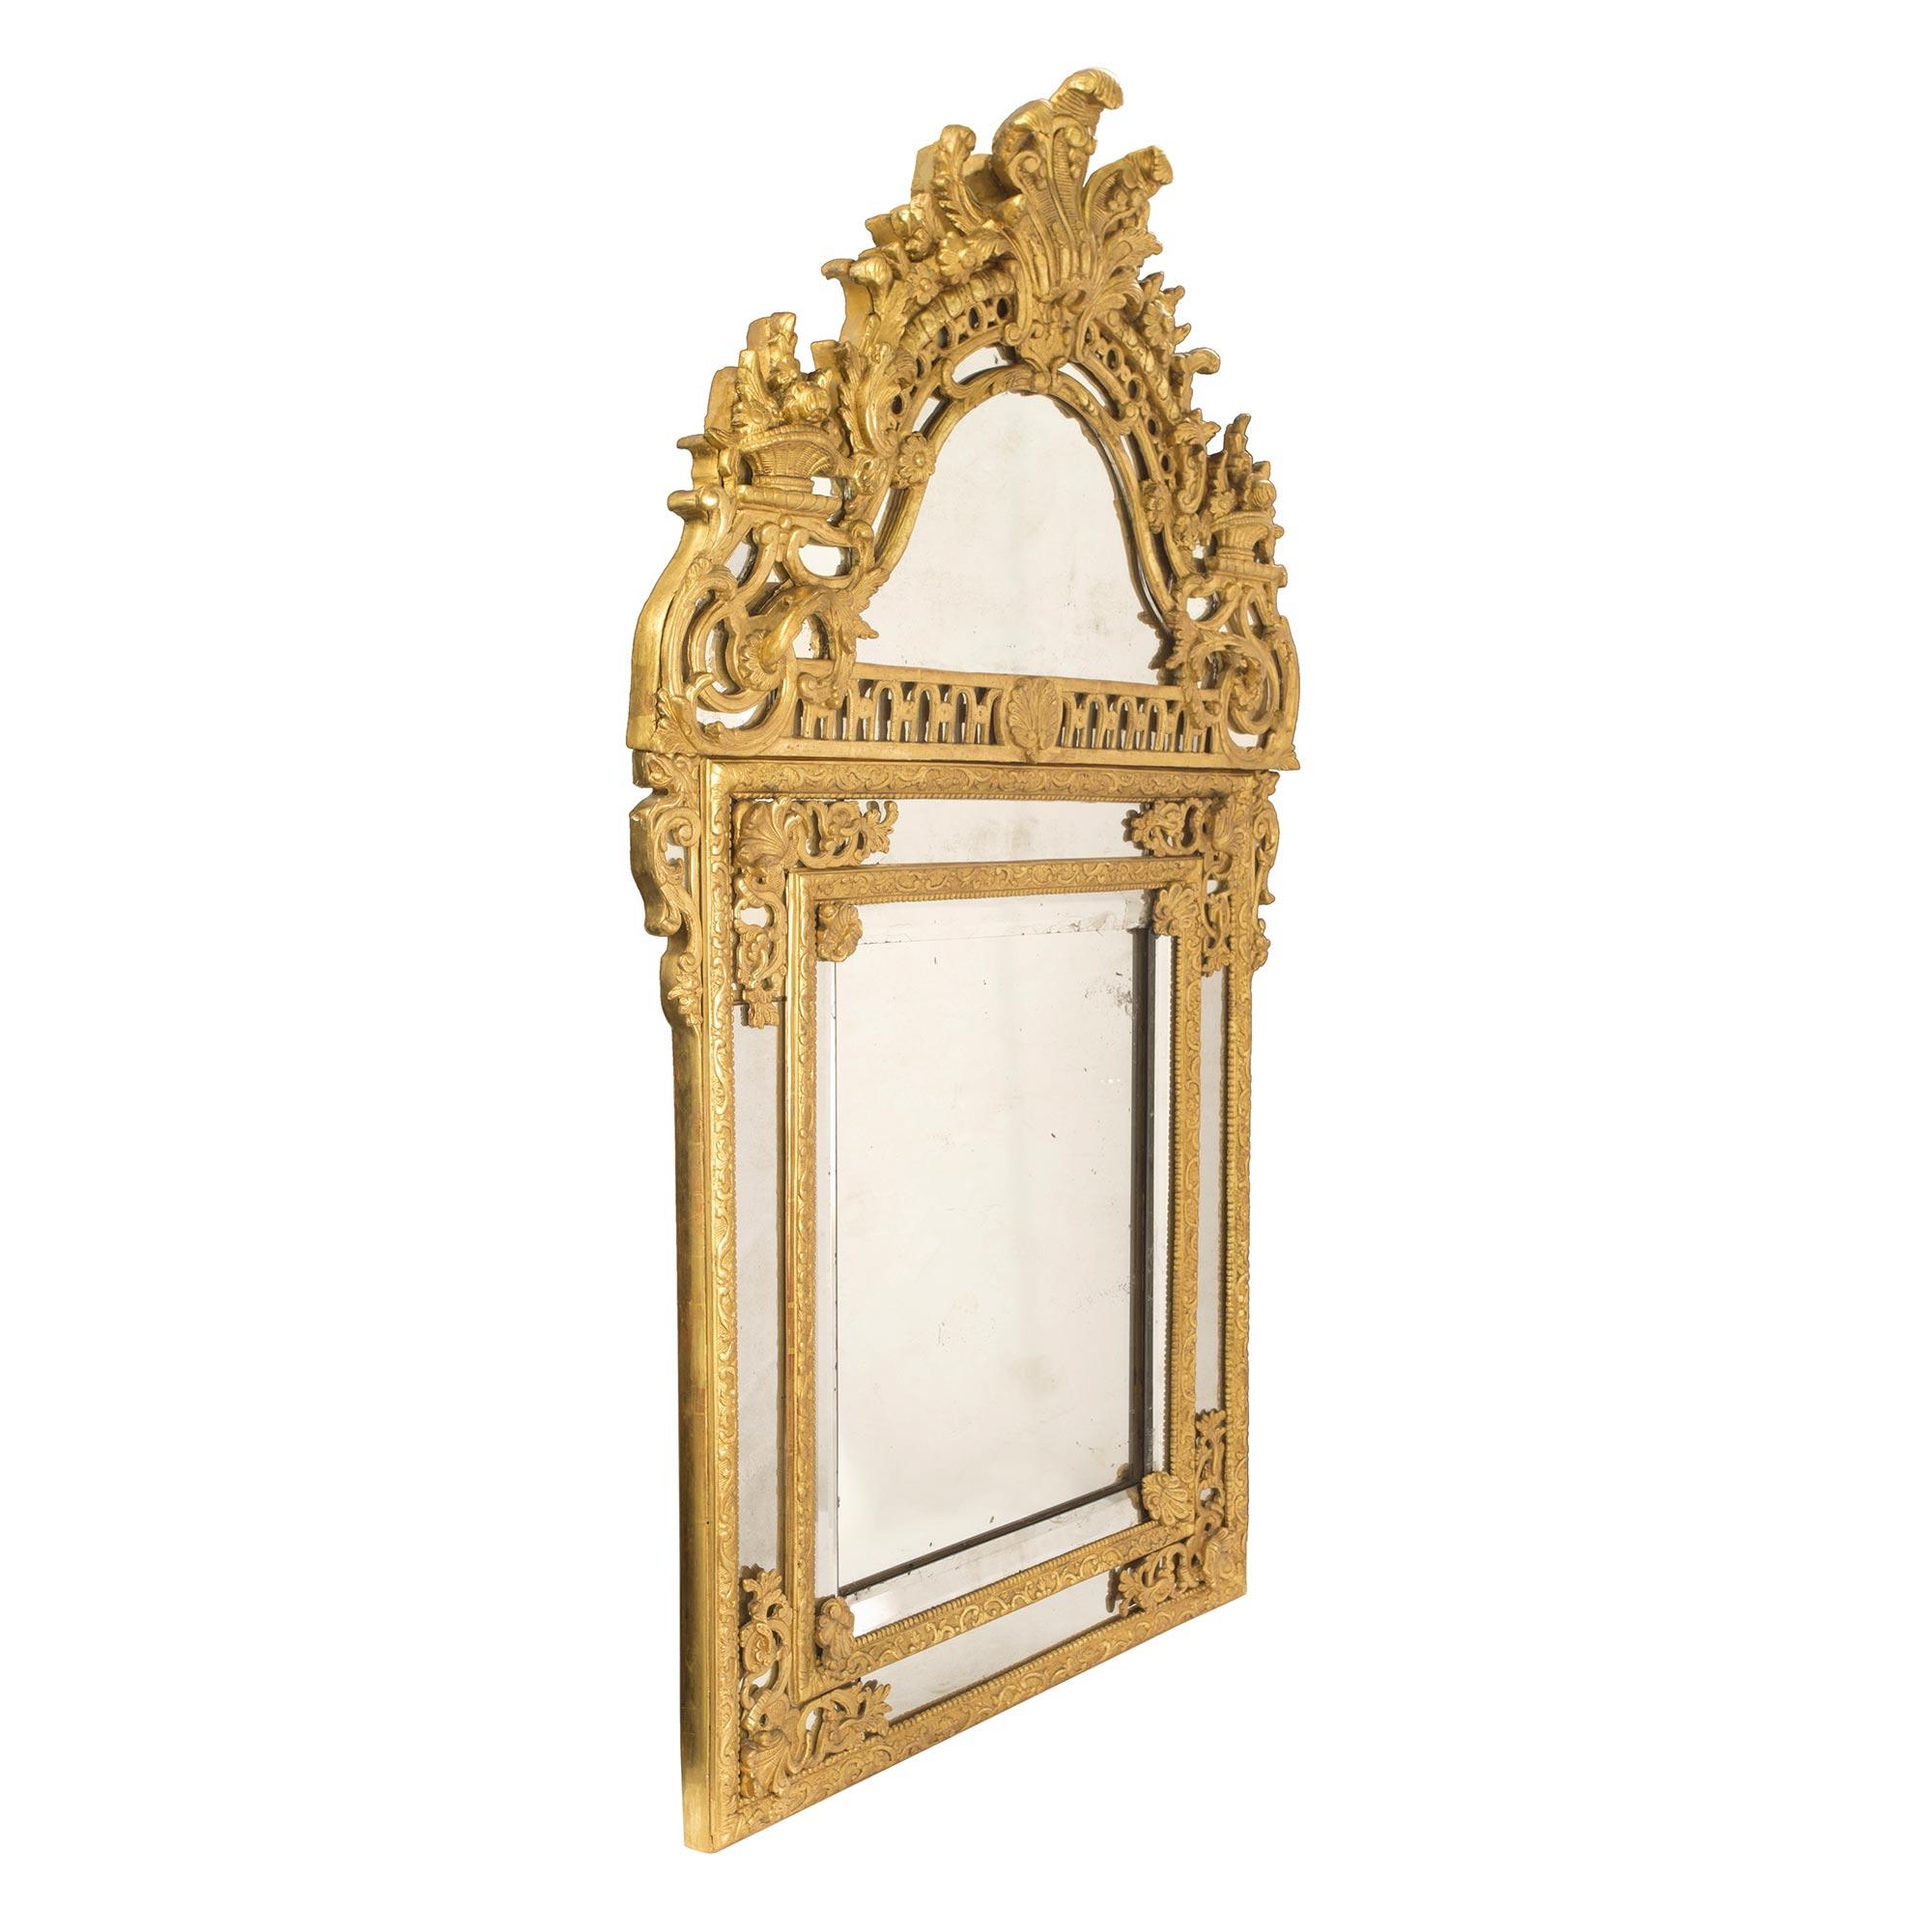 Superbe miroir en bois doré à double cadre de la période Régence du 18e siècle. Le cadre présente des motifs feuillagés saisissants et très détaillés, ainsi que de belles réserves d'angle détaillées et percées de feuillages. La majestueuse couronne